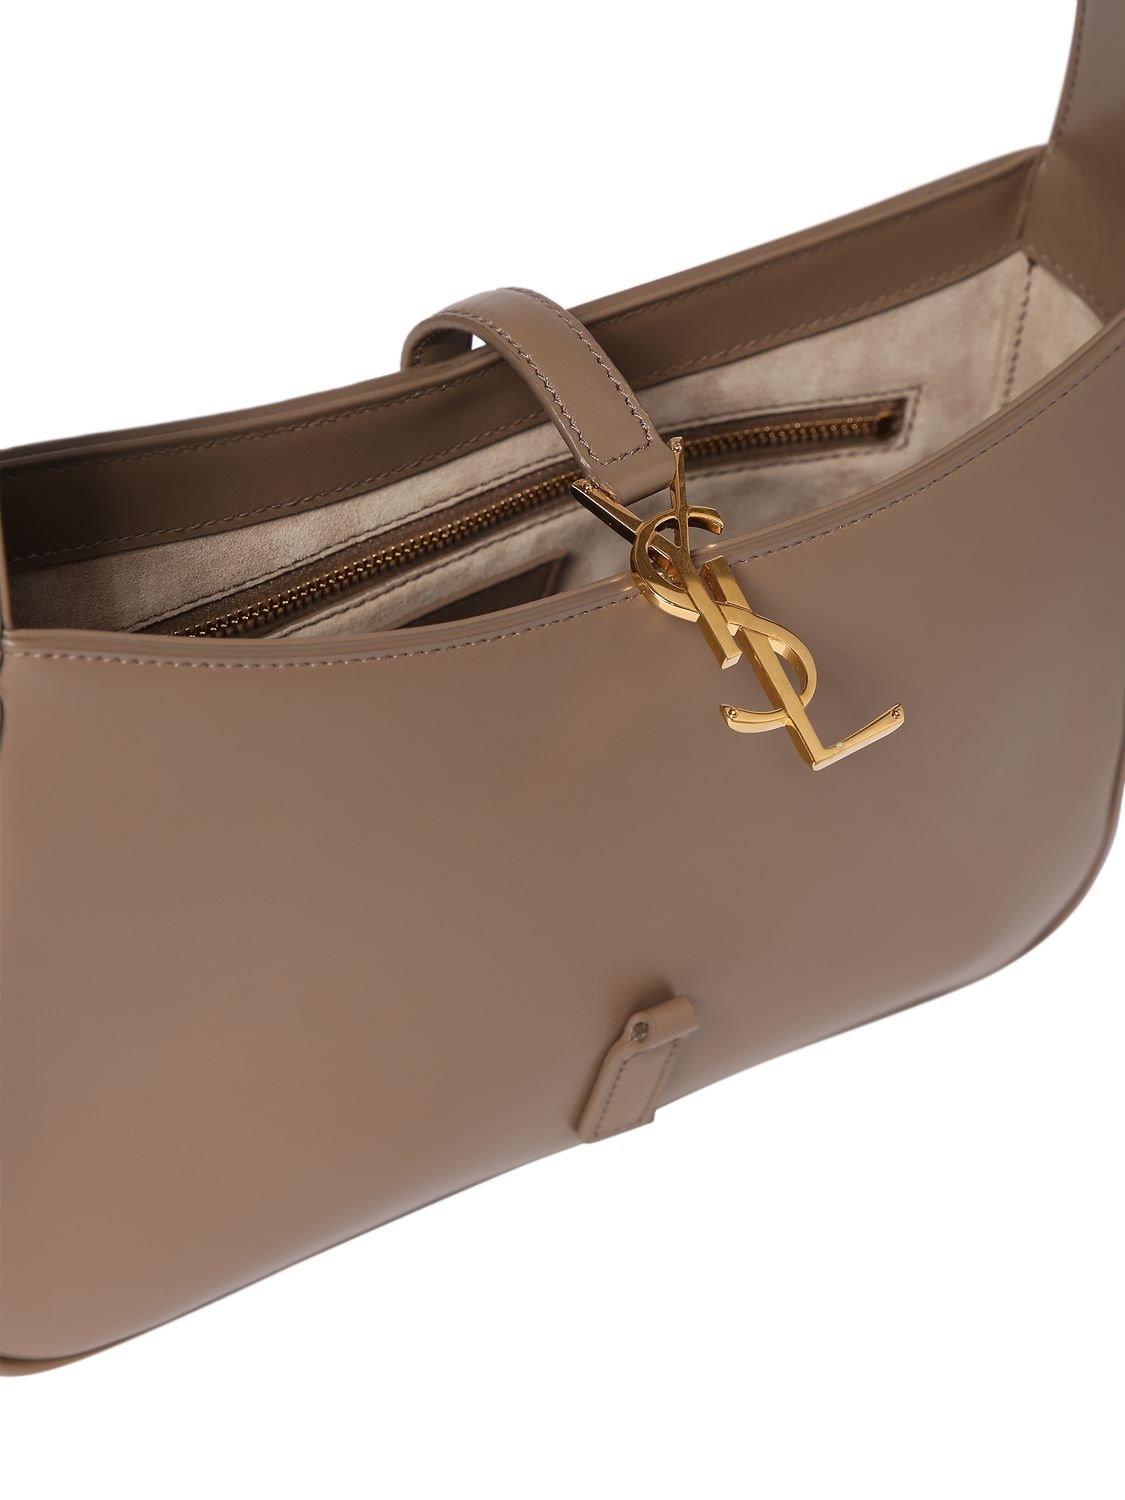 Le 5 à 7 leather handbag